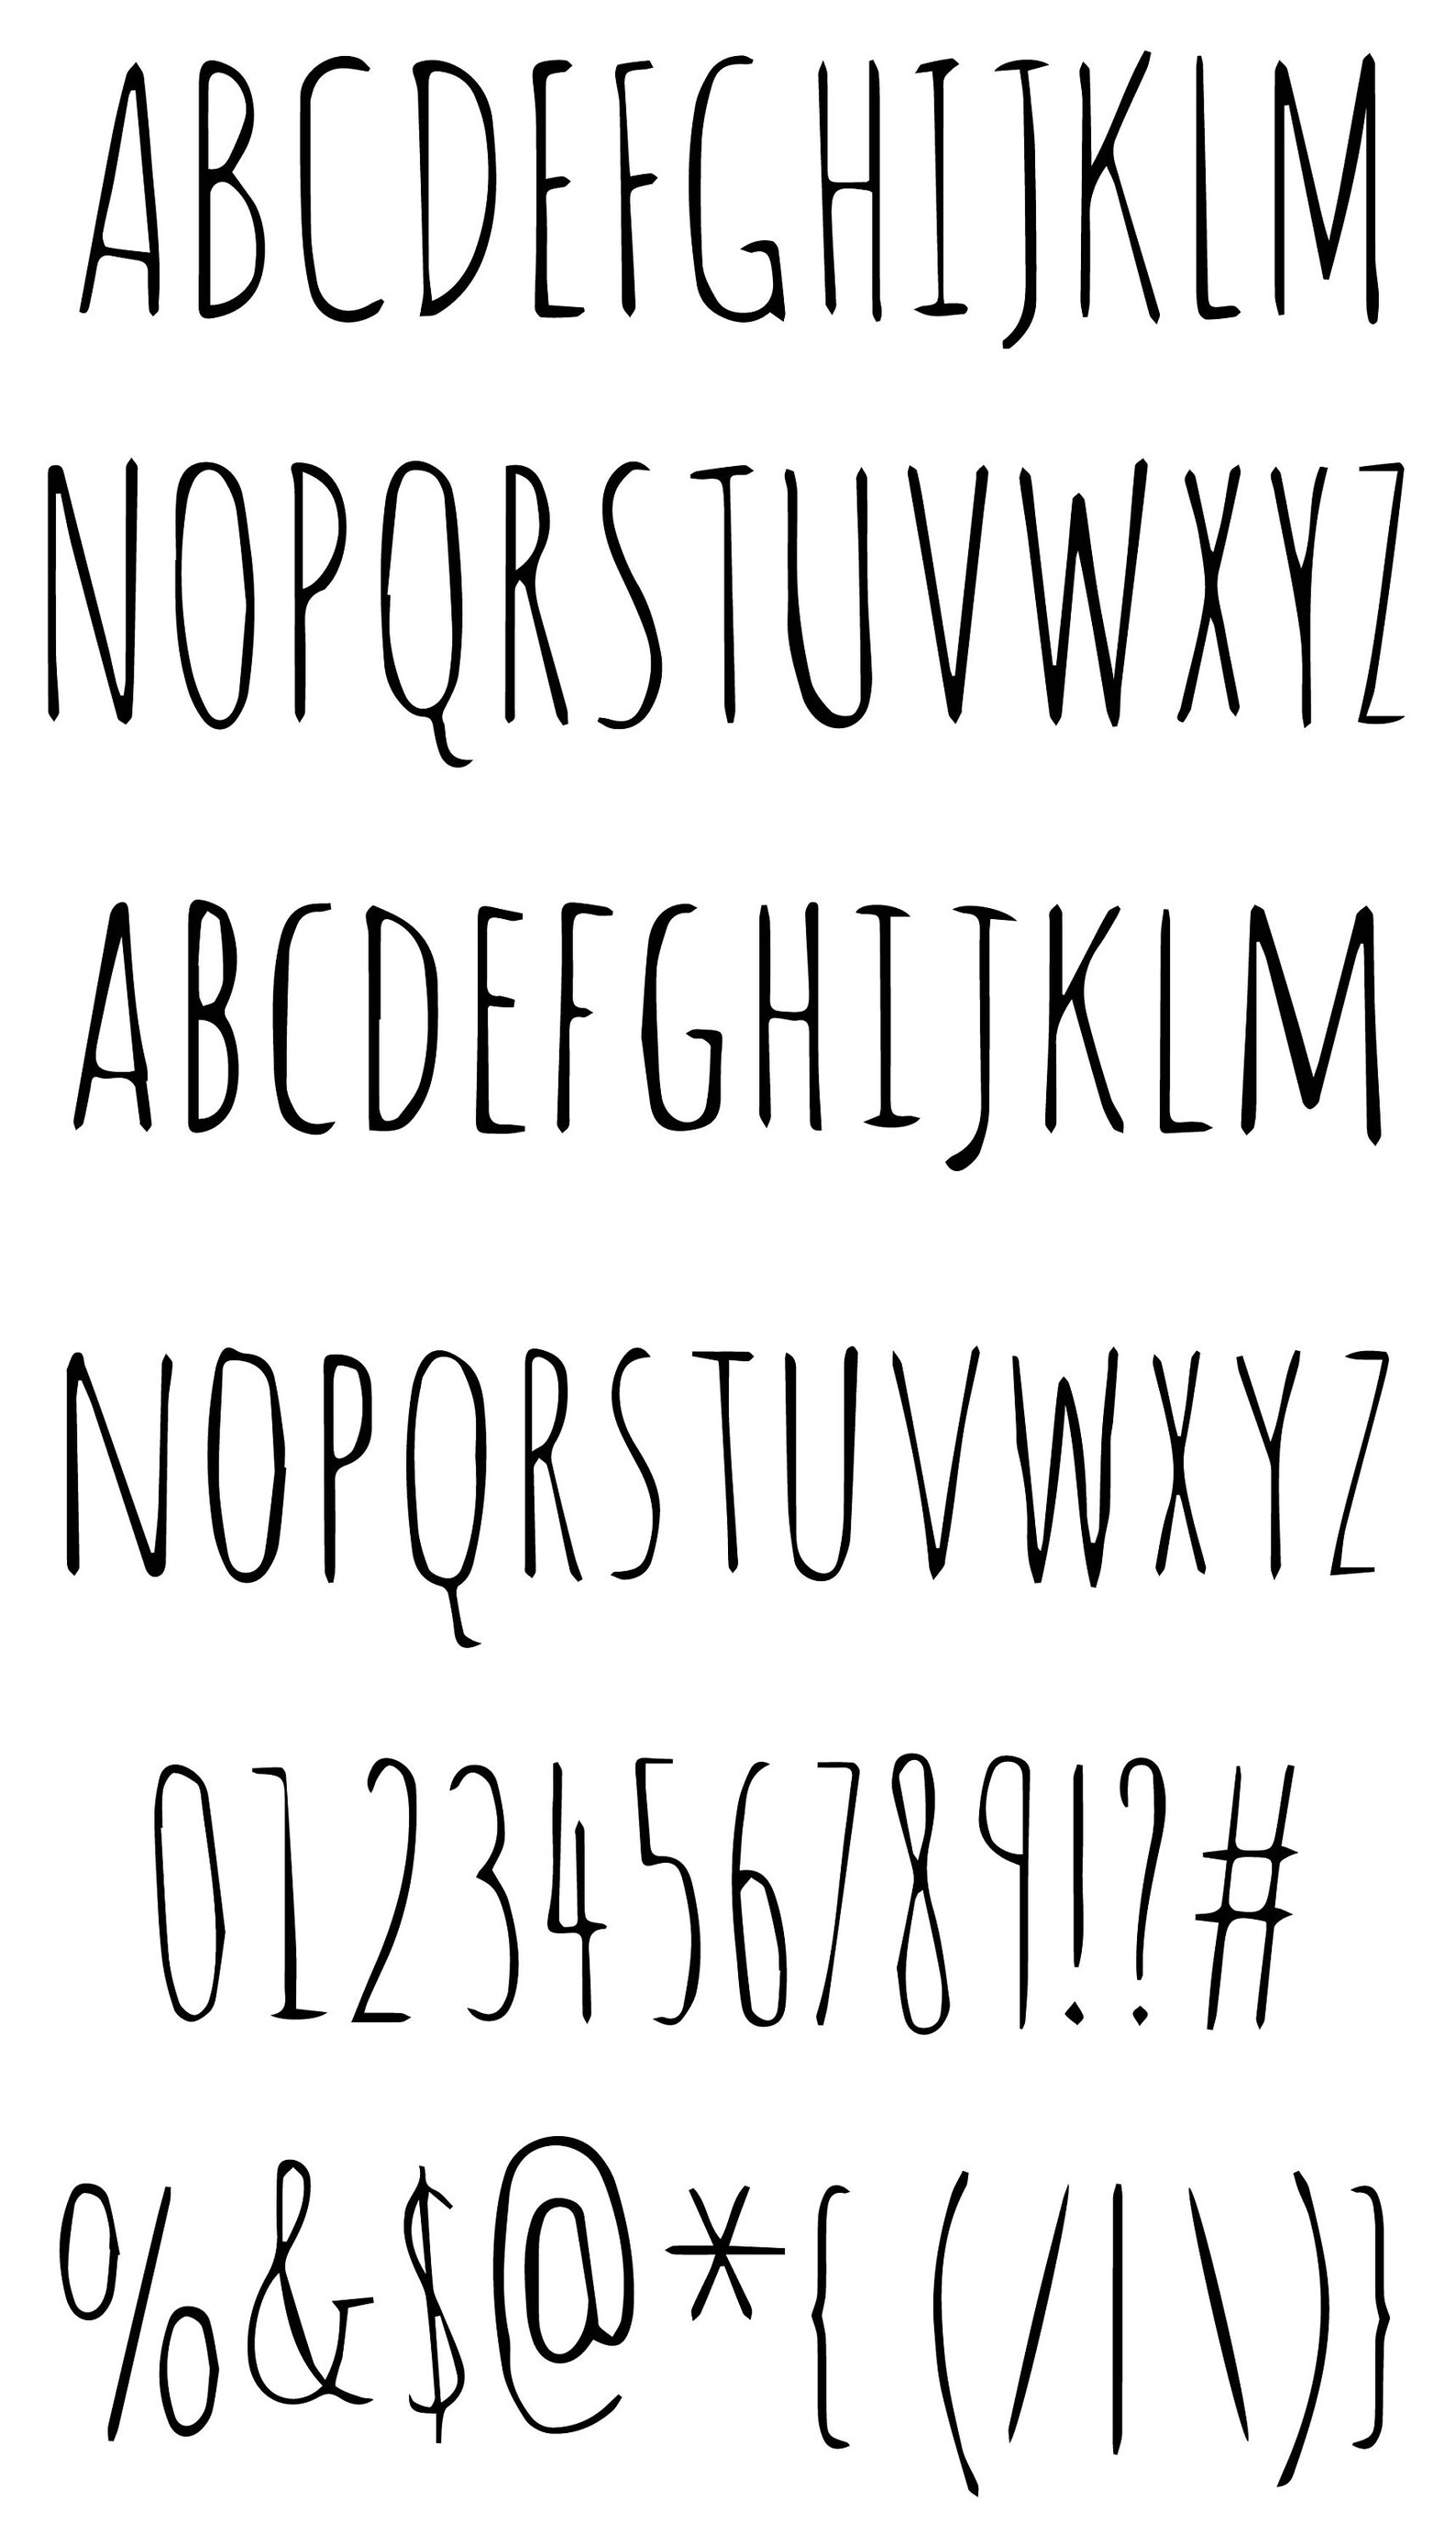 Шрифт amatic sc. Идеи для шрифта. Шрифты для тегов. Vonique64 шрифт. Tumblr font.